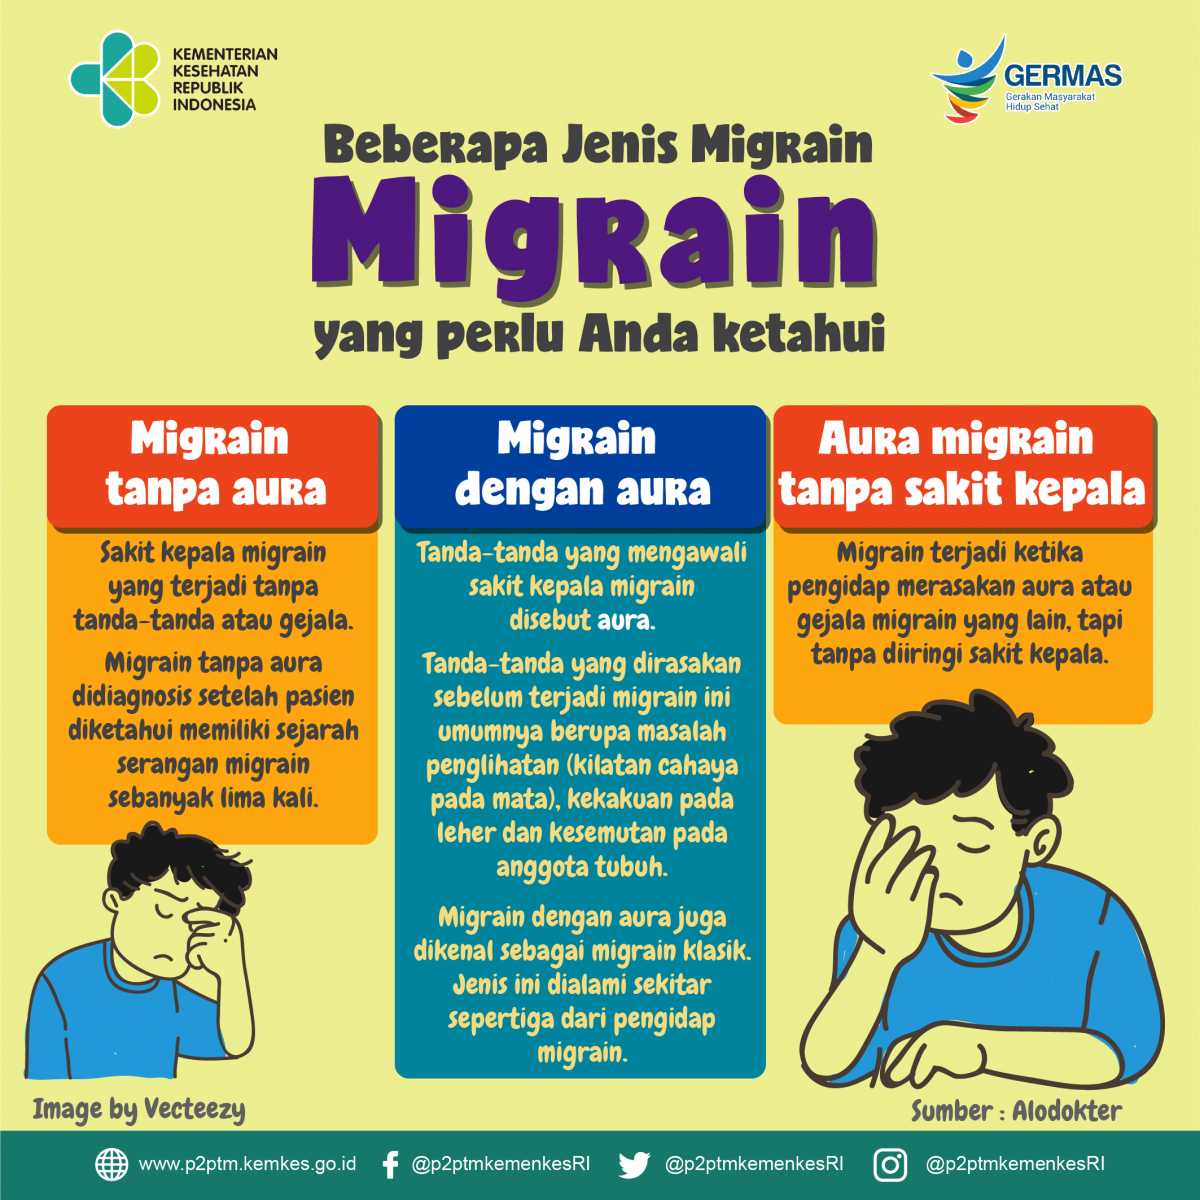 Beberapa jenis migrain yang perlu Anda ketahui